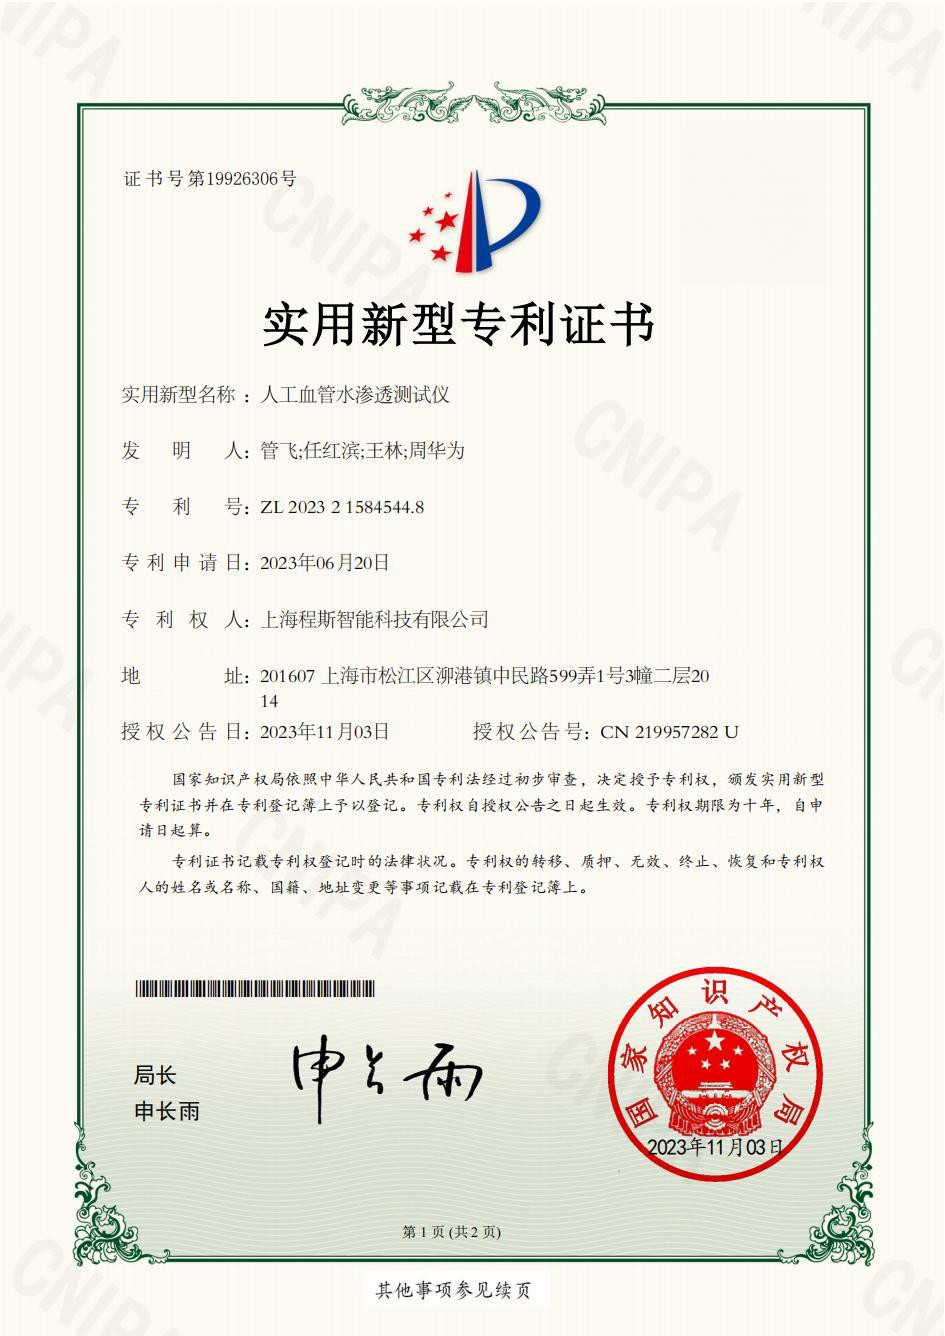 人工血管水渗透测试仪：上海程斯荣获专利，引领行业创新